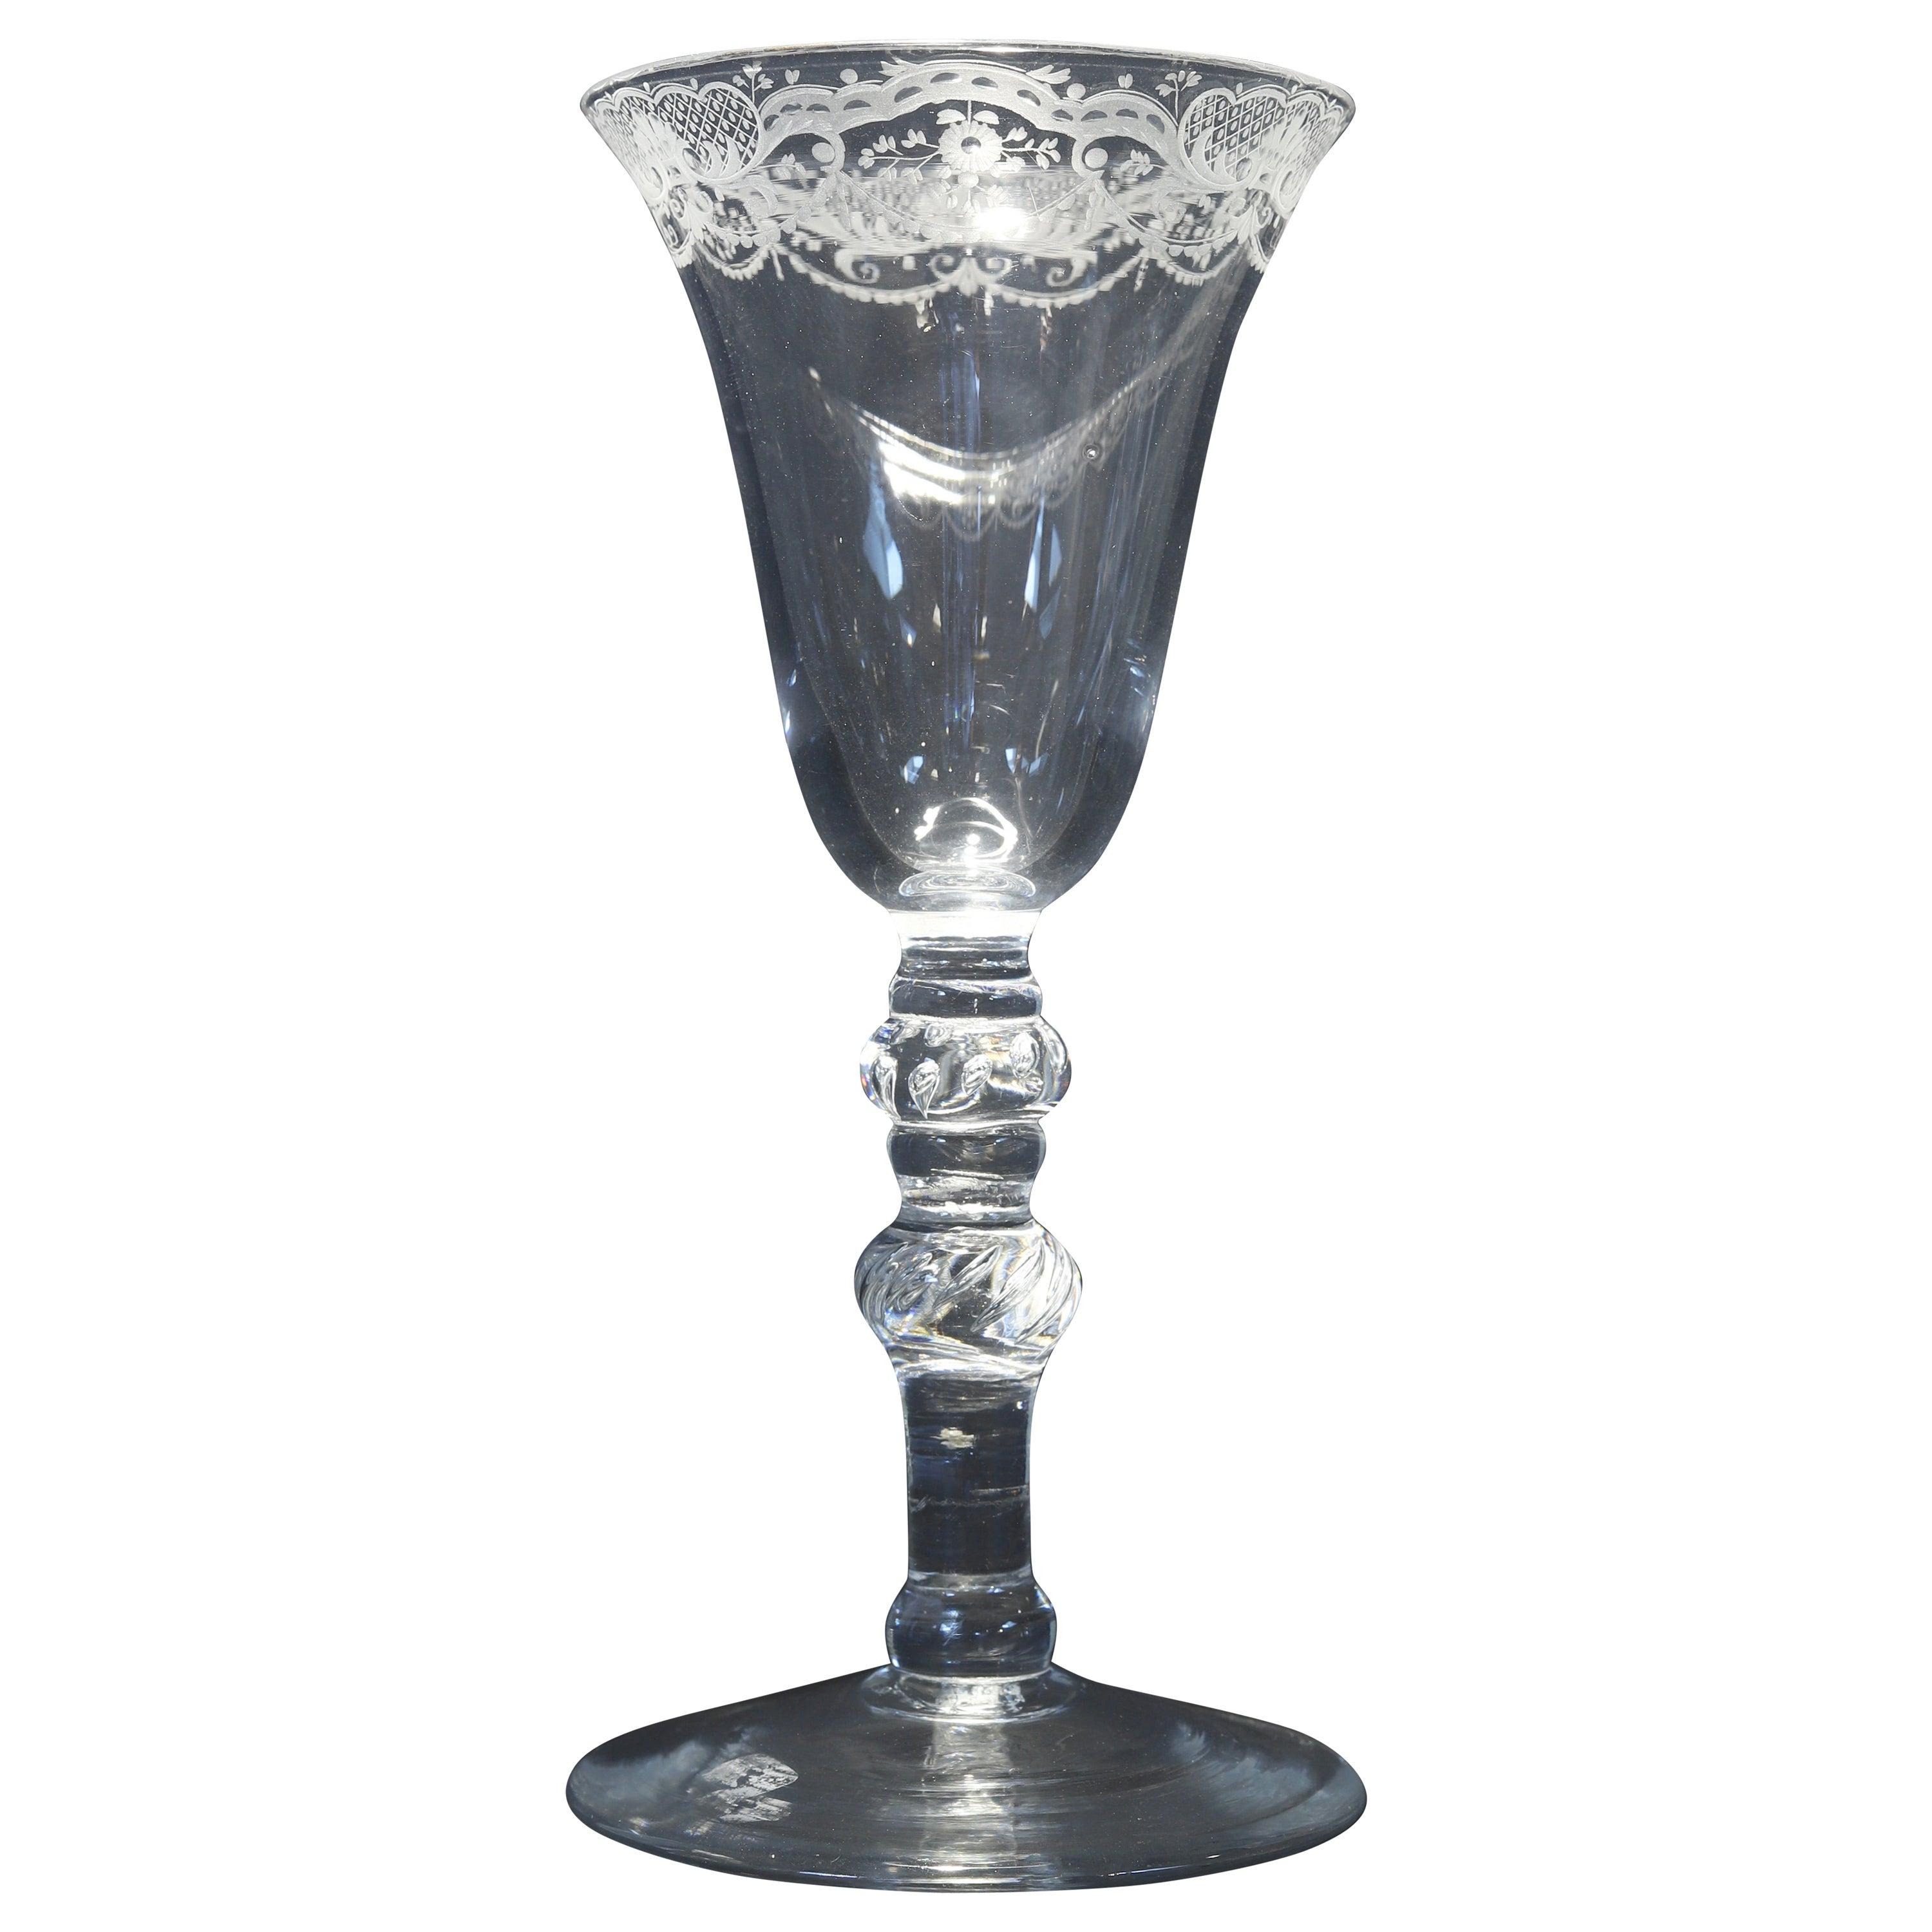 Ein niederländisches graviertes Baluster-Weinglas, Mitte des 18. Jahrhunderts